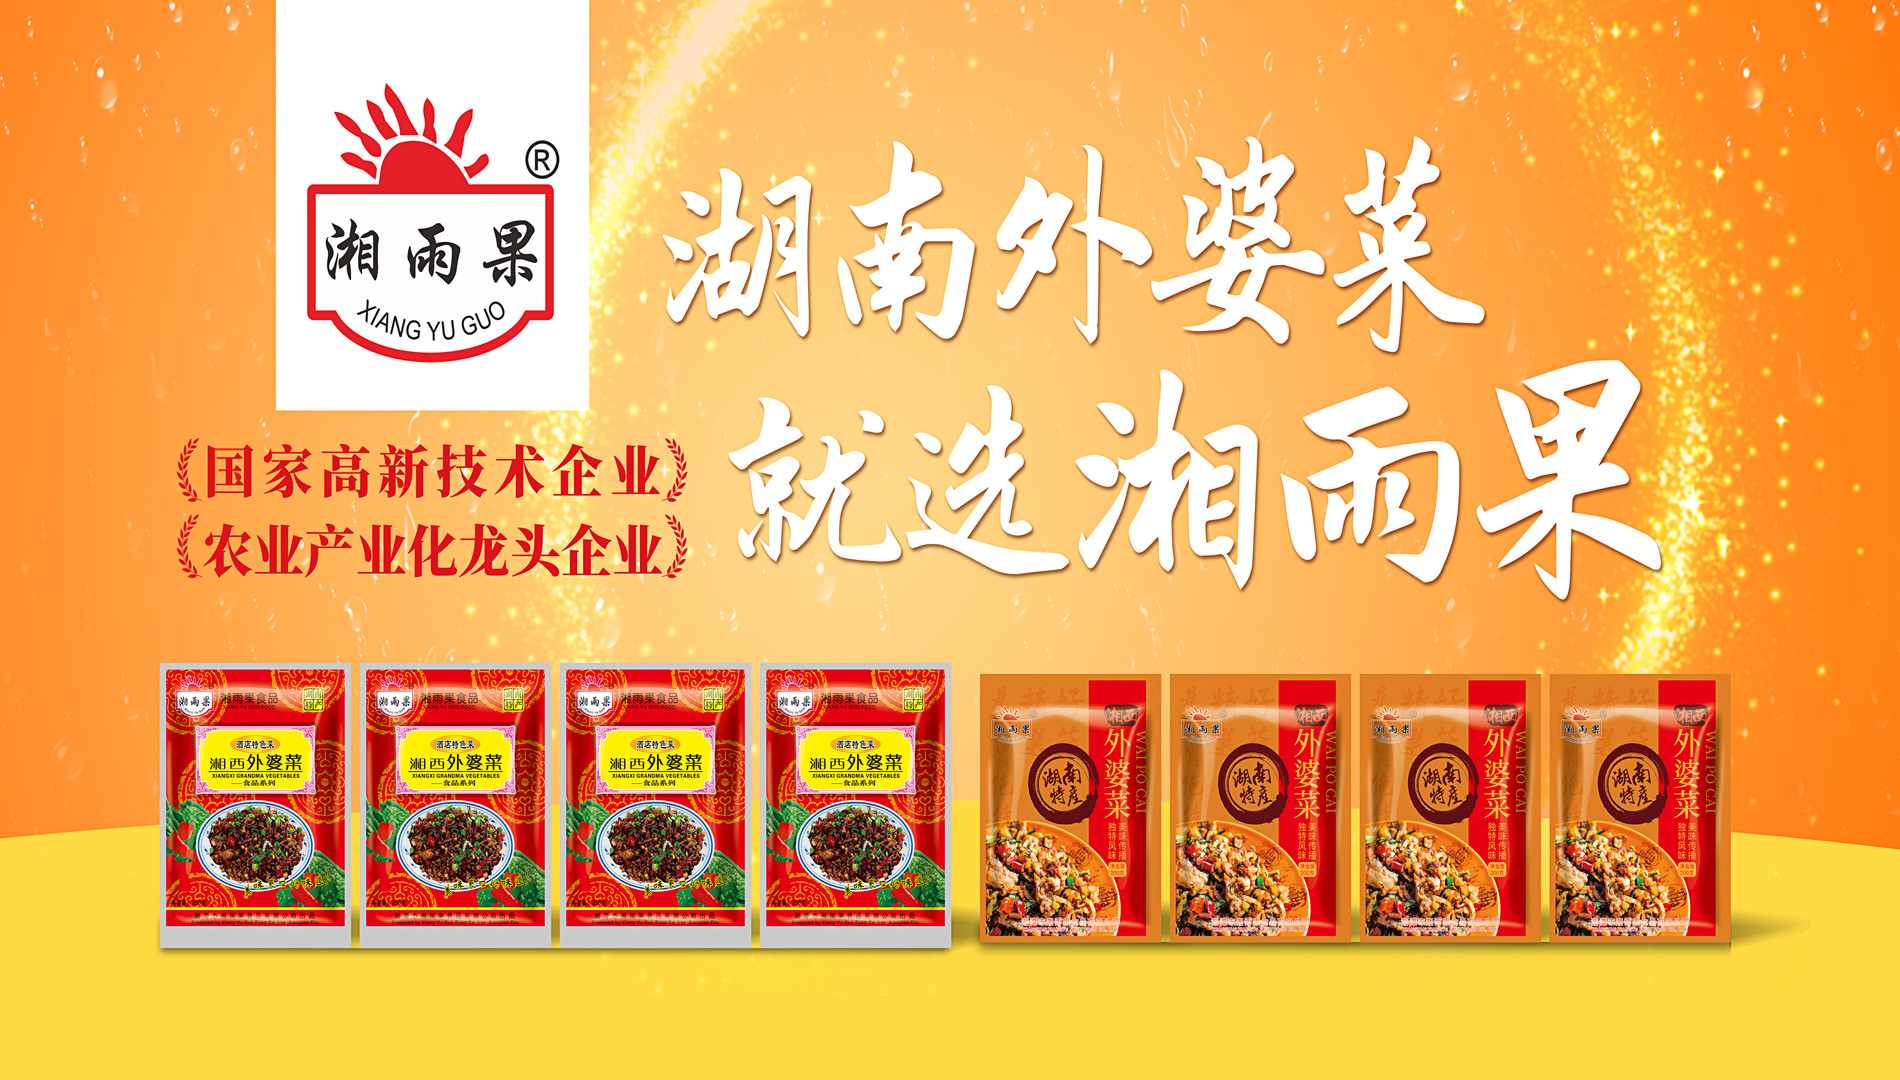 Xiang Yu Guo Food - empresa de referência da indústria de pratos pré-fabricados